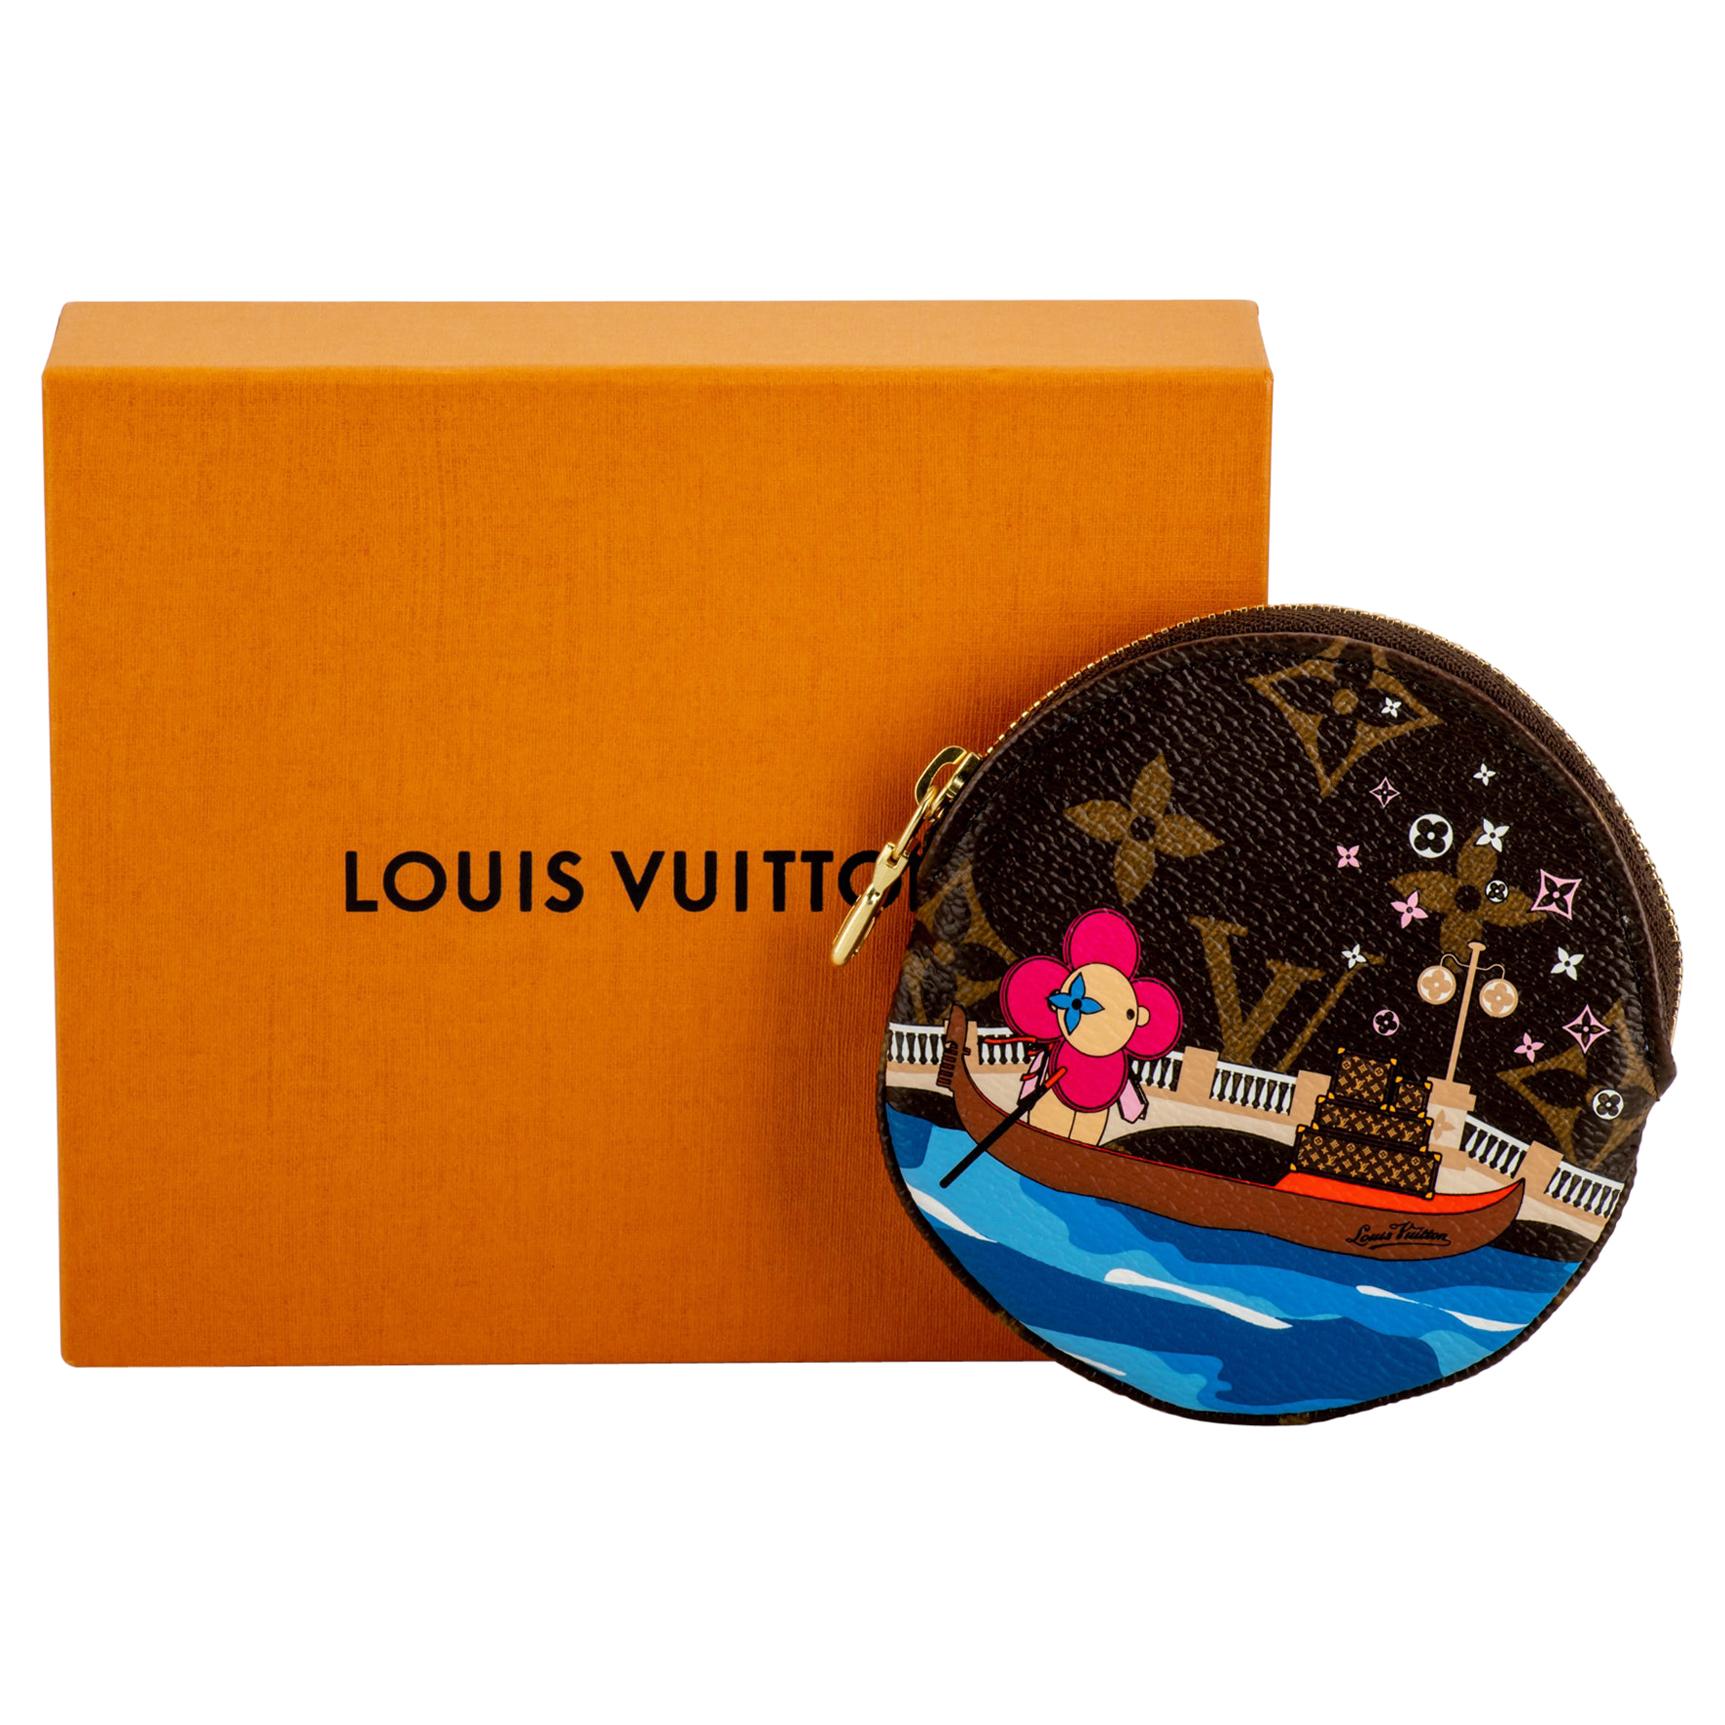 New in Box Louis Vuitton Christmas 2019 Venice Coin Case